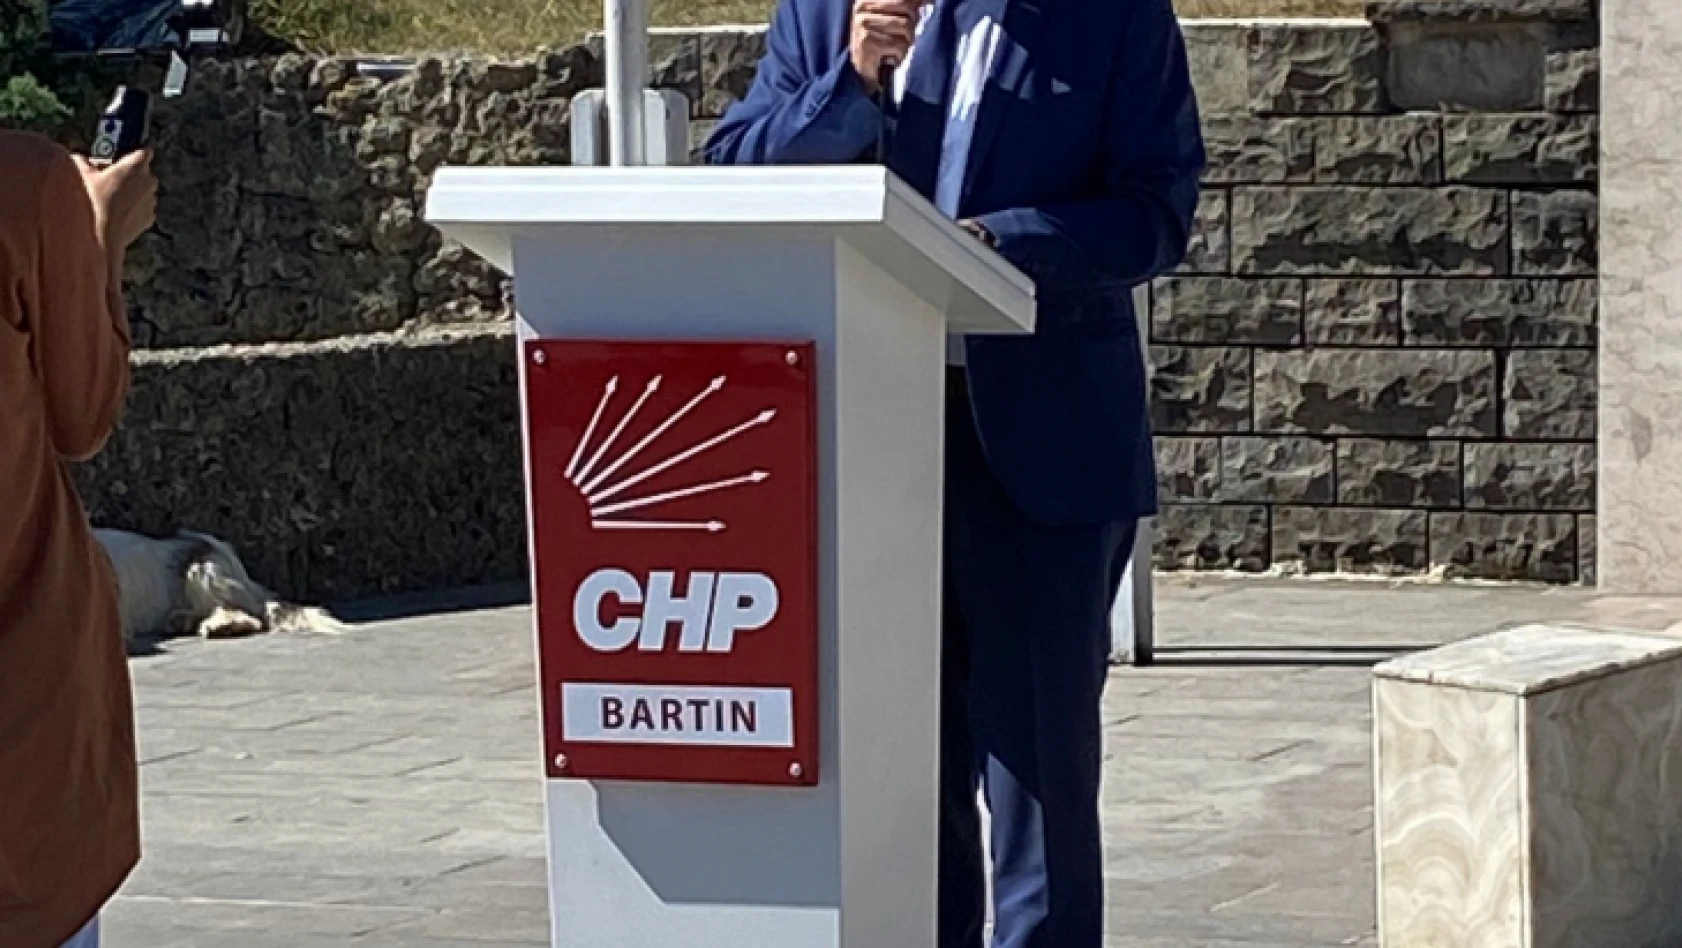 Bartın'da CHP'nin 99. Kuruluş Yıldönümü törenle kutlandı